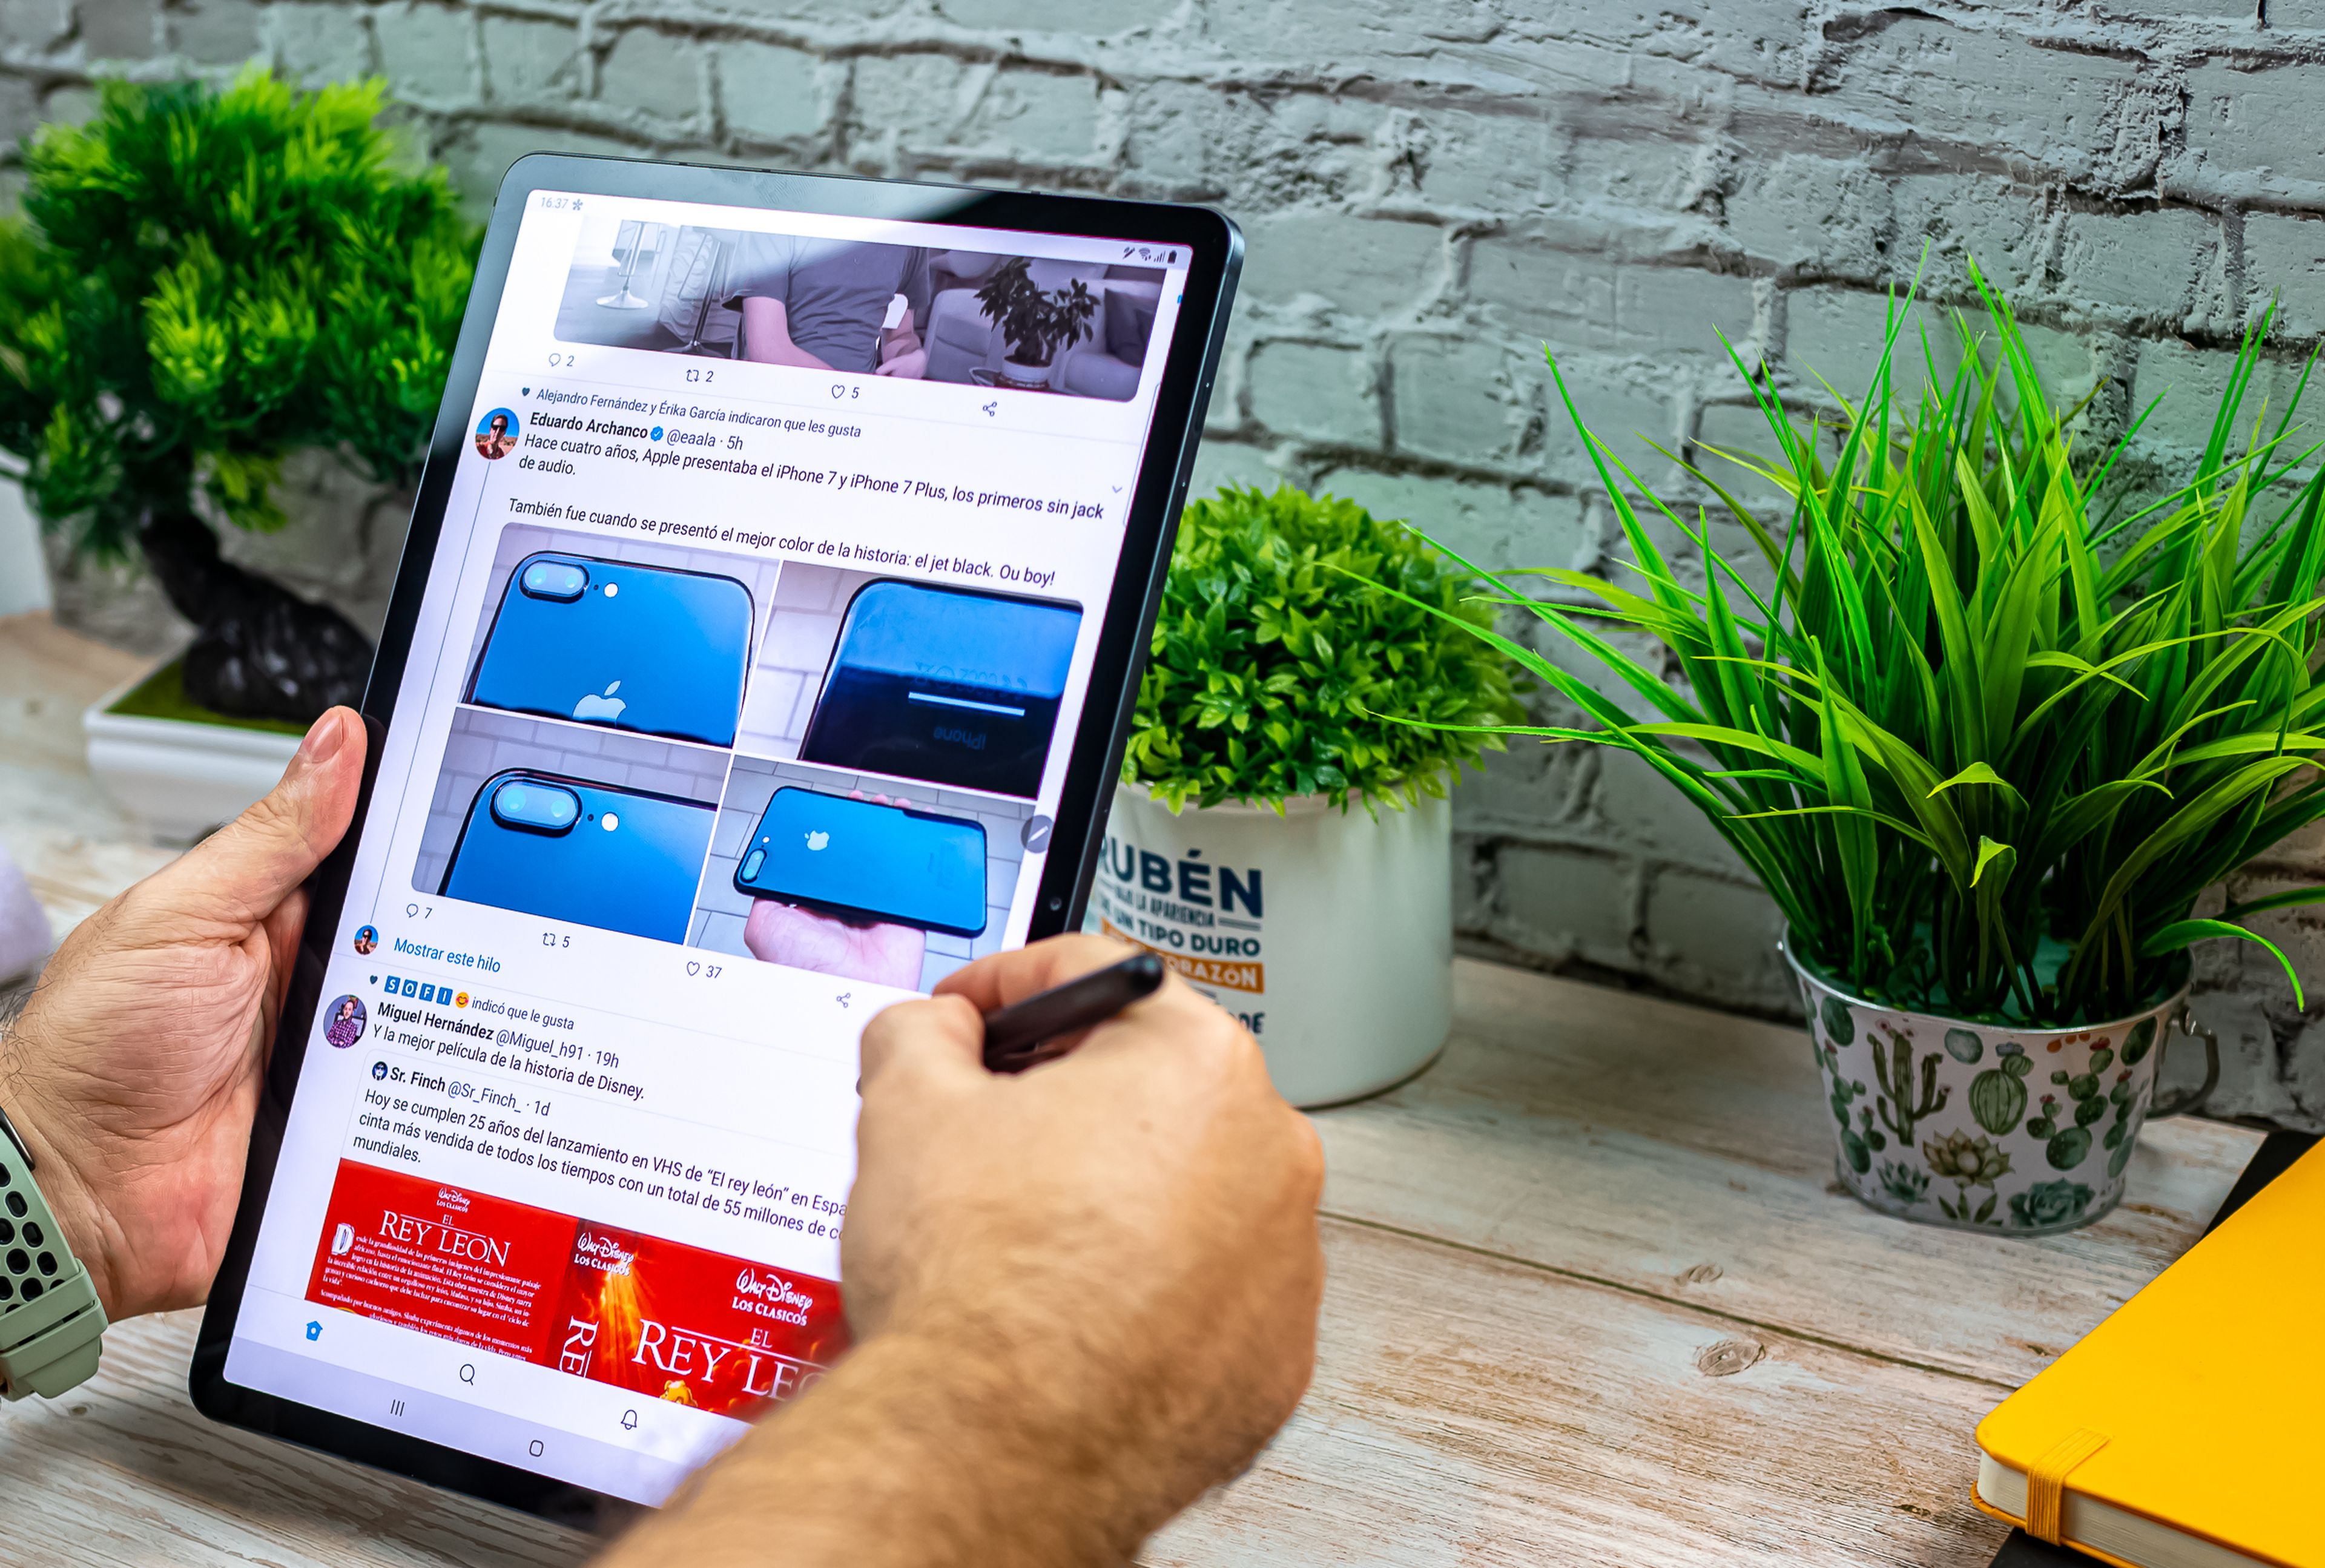 Samsung Galaxy Tab S7+, análisis y opinión